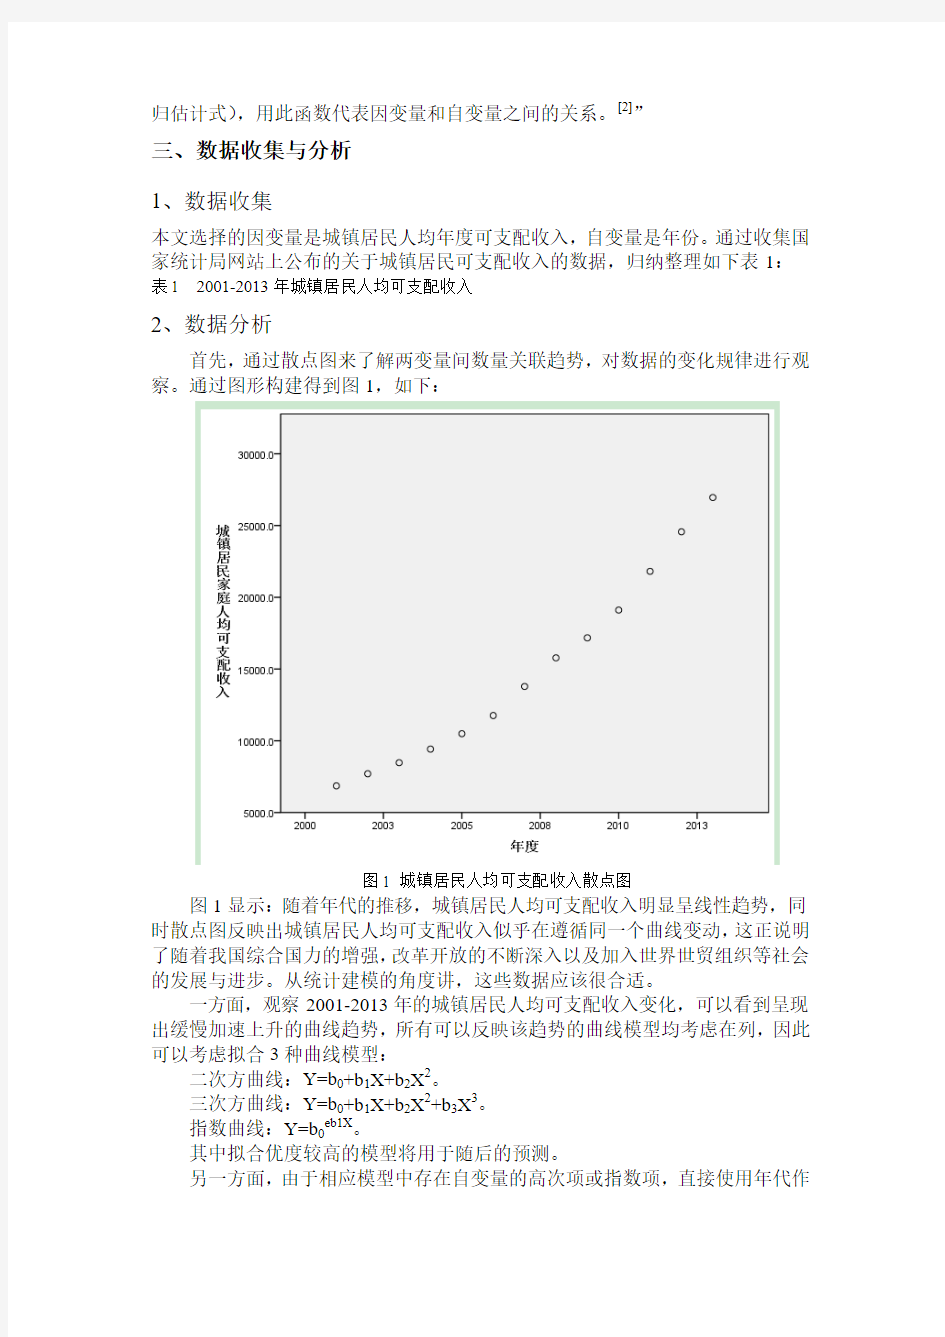 基于回归分析的中国城镇居民人均可支配收入的预测研究